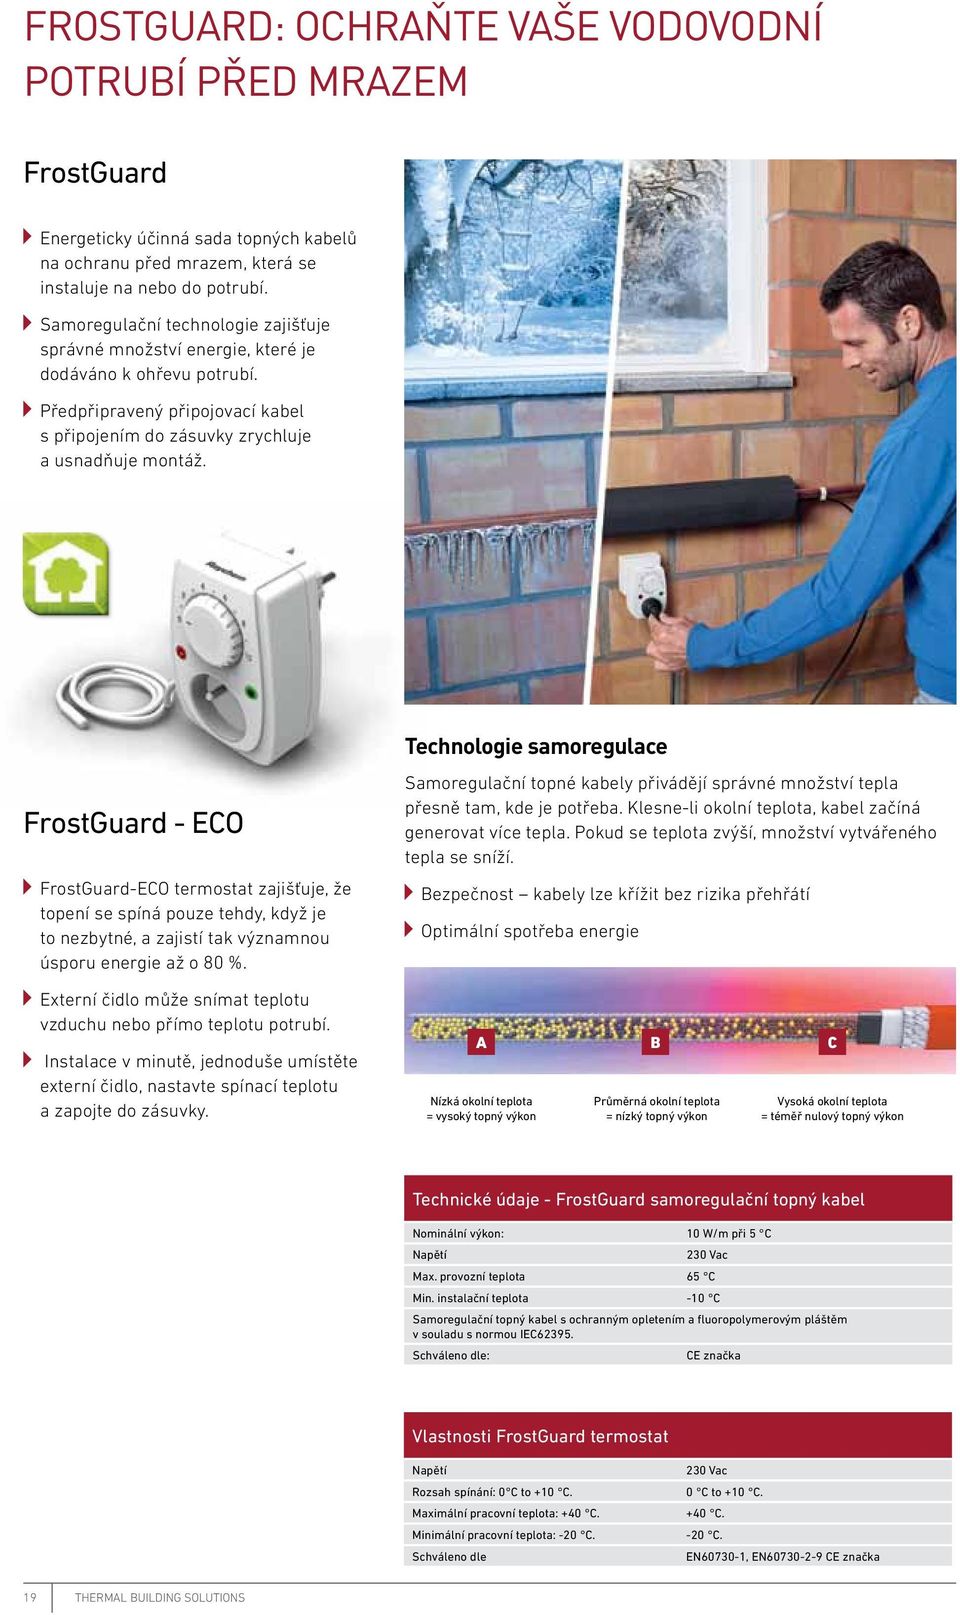 FrostGuard - ECO FrostGuard-ECO termostat zajišťuje, že topení se spíná pouze tehdy, když je to nezbytné, a zajistí tak významnou úsporu energie až o 80 %.